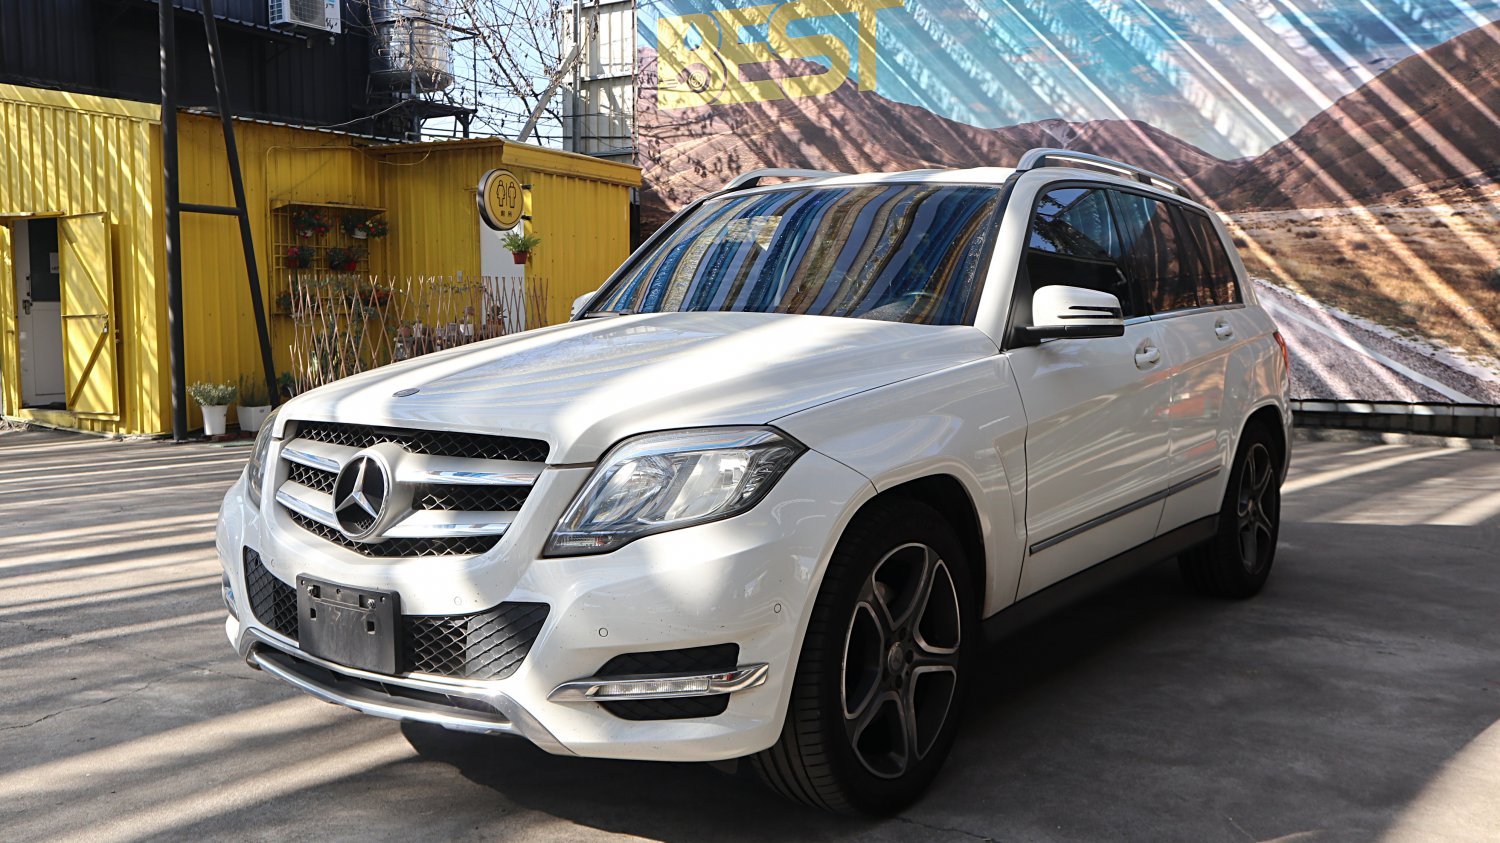 Benz 賓士 ／ GLK-Class ／ 2015年 ／ 2015年 Benz GLK220 白色 賓士休旅車 ／ TA北安店(台南)